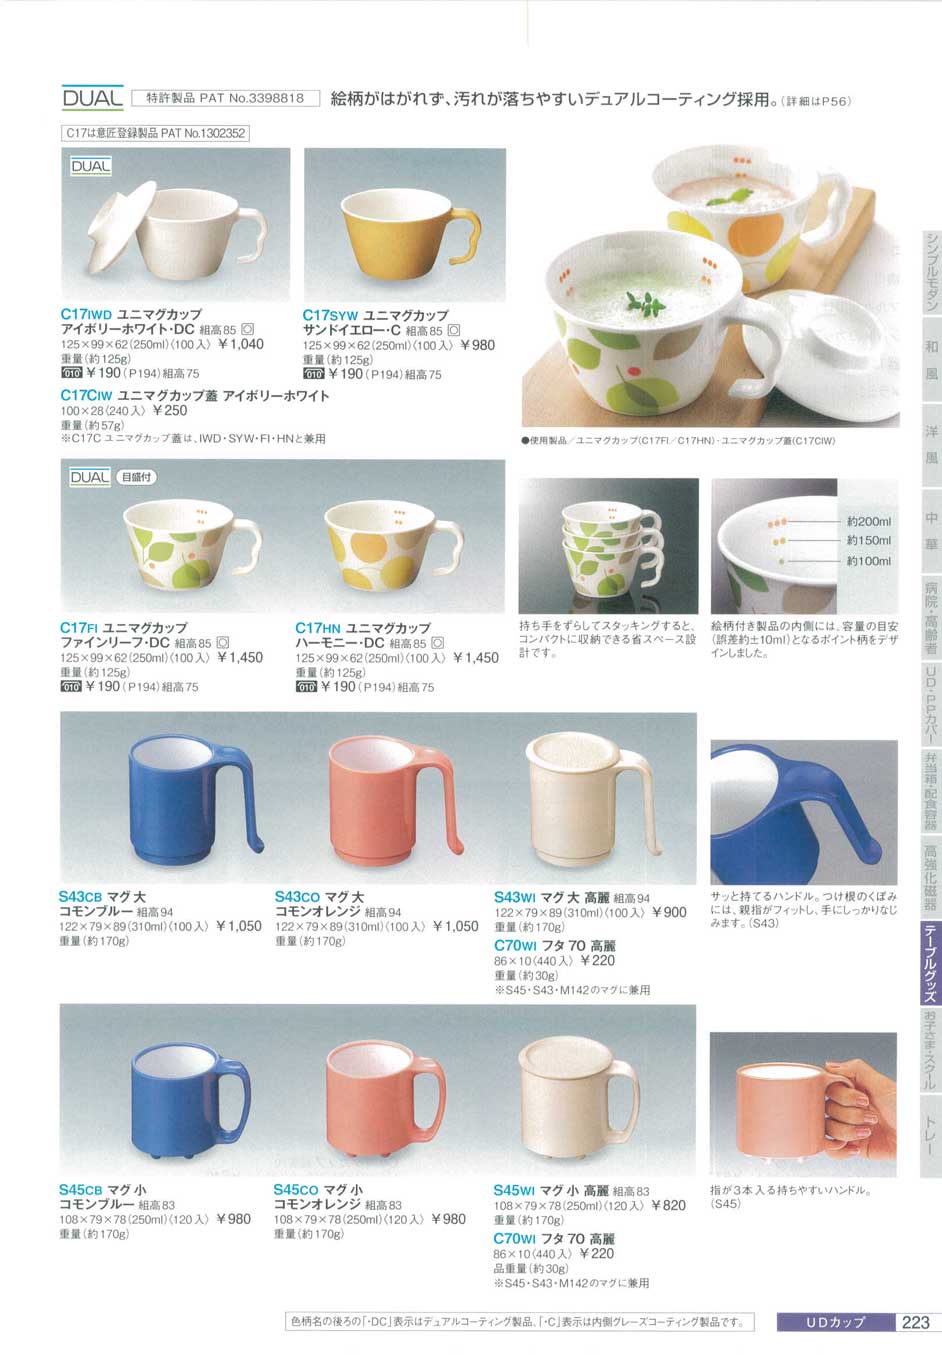 ユニカップ(介護用品：介護用マグカップ) - 食事介助商品